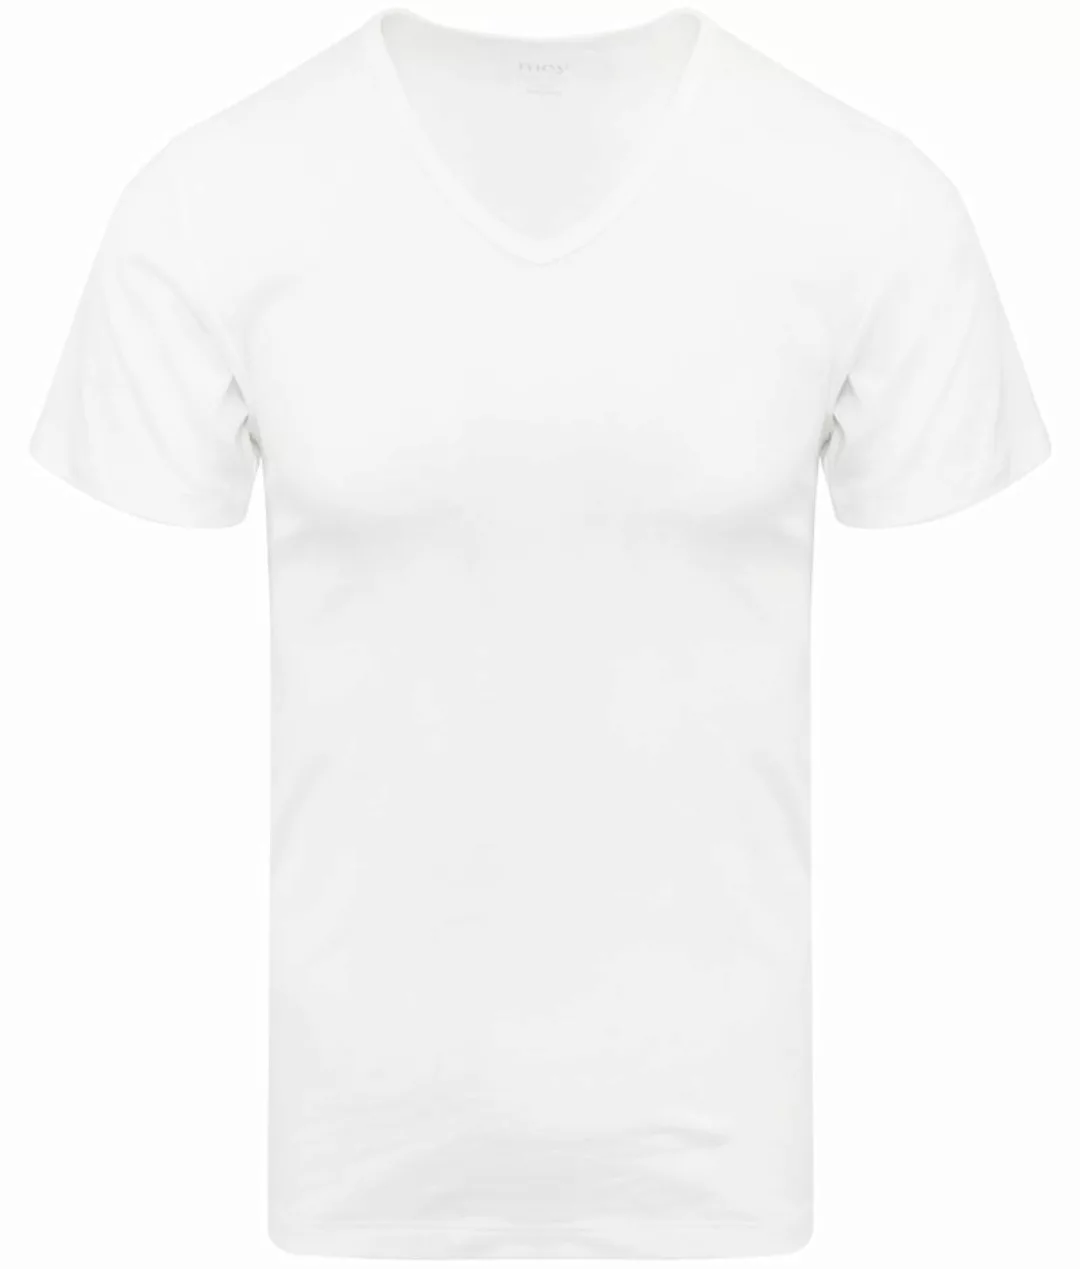 Mey Noblesse V-Ausschnitt T-Shirt Weiß - Größe XL günstig online kaufen